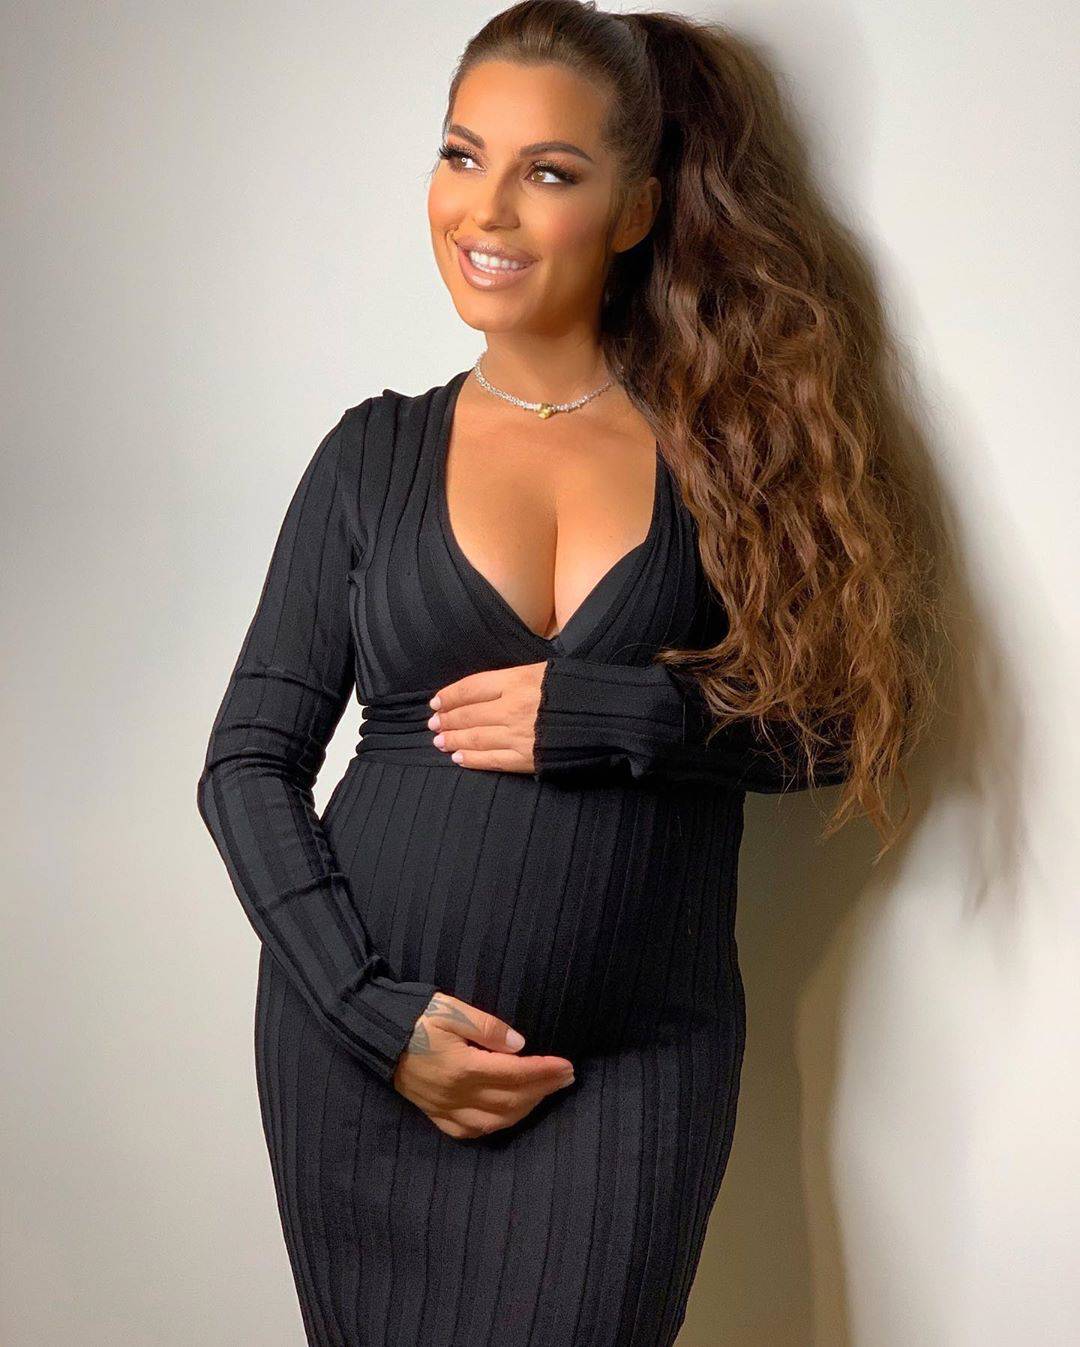 Seka Aleksić pozirala trudna u hotelu: 'Mogu li doći u goste?'